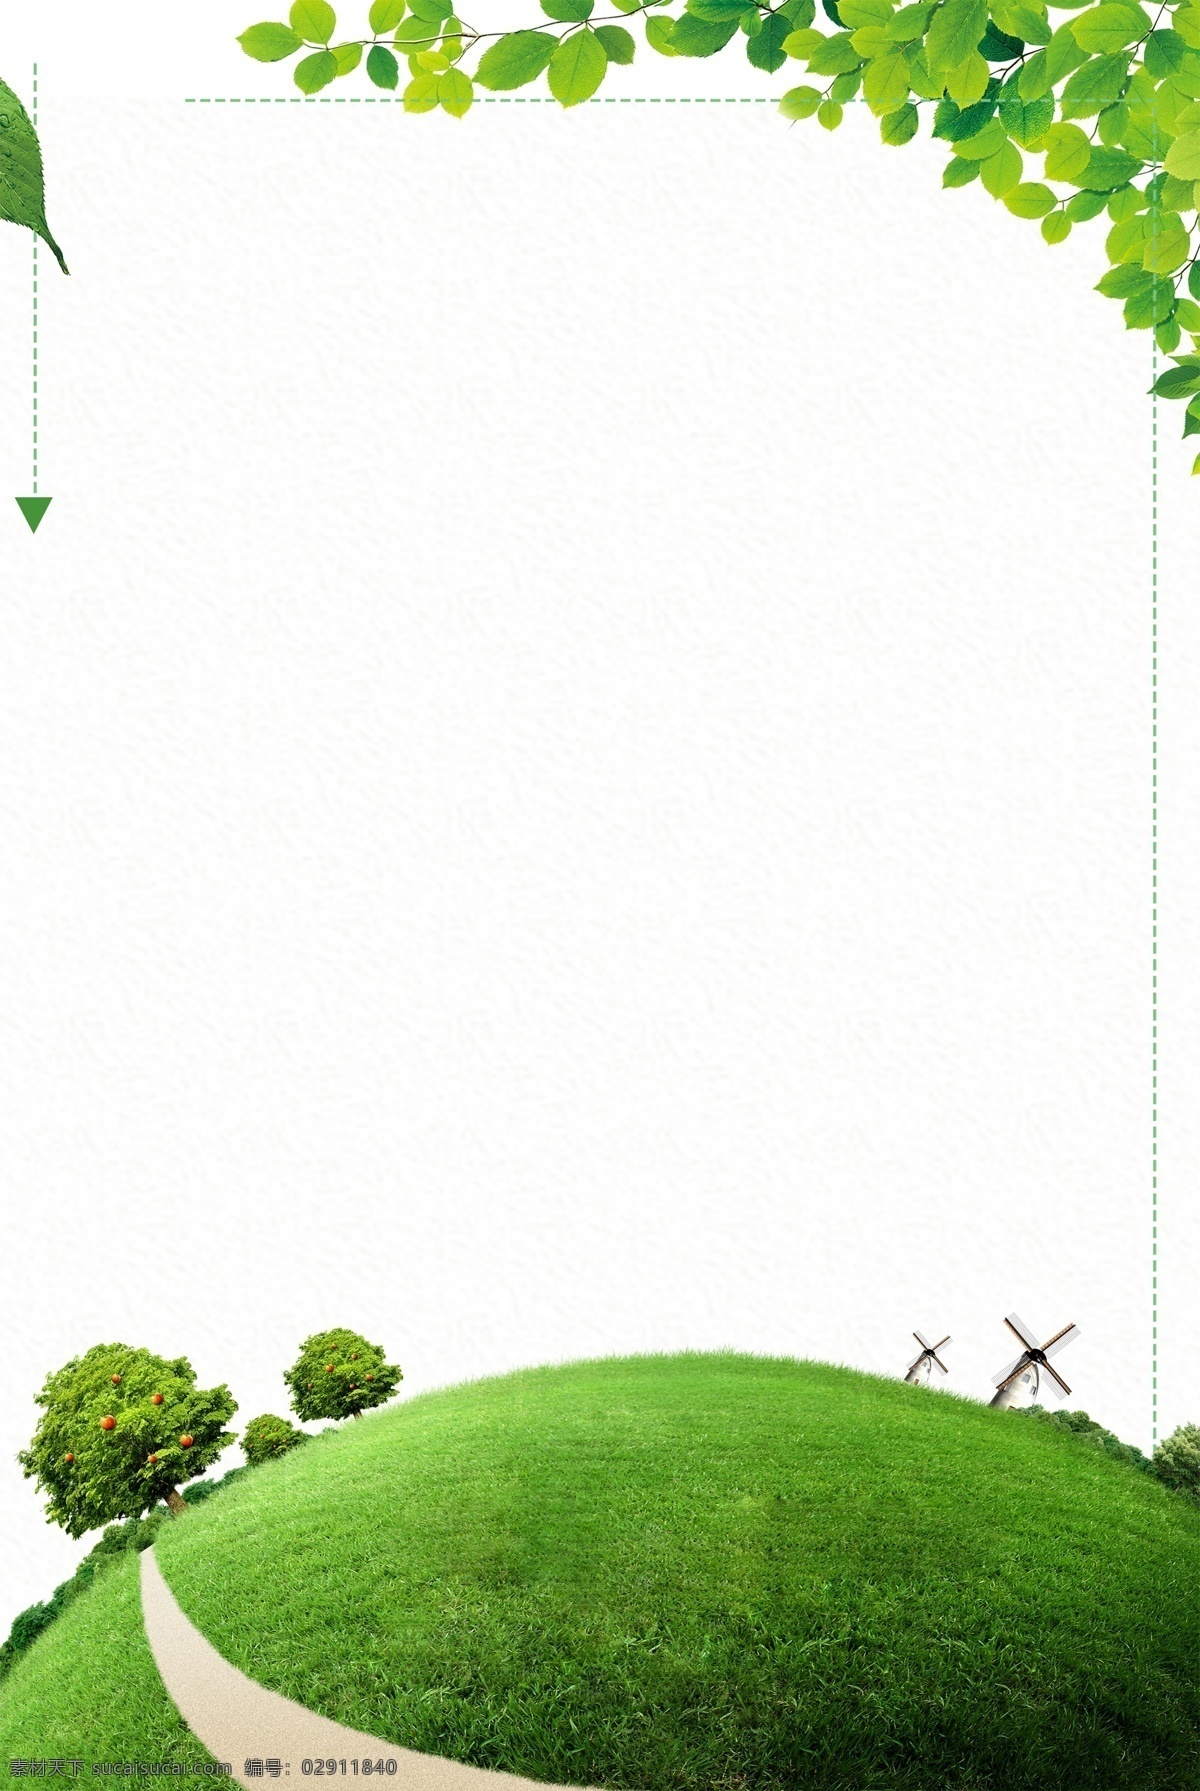 环保 环保背景 环保素材 环保模板 环保海报 绿色海报 环保局 植树节 植树节海报 绿色背景 健康 健康背景 健康展板 健康海报 节能减碳 背景 展板模板